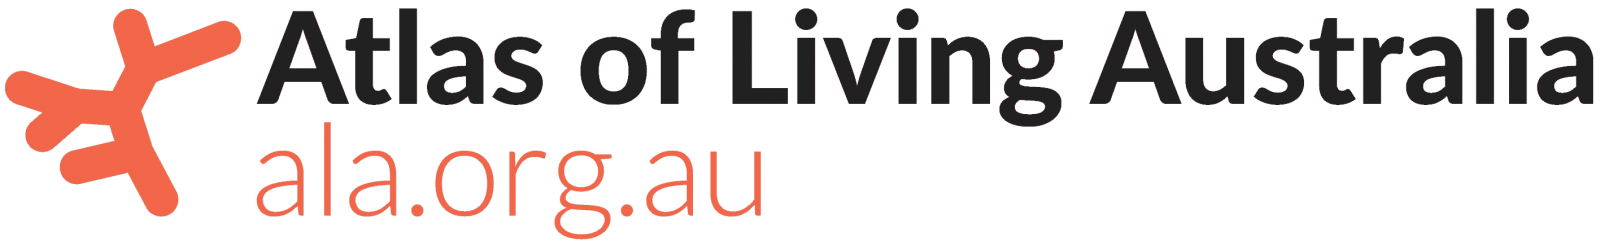 Atlas of Living Australia logo